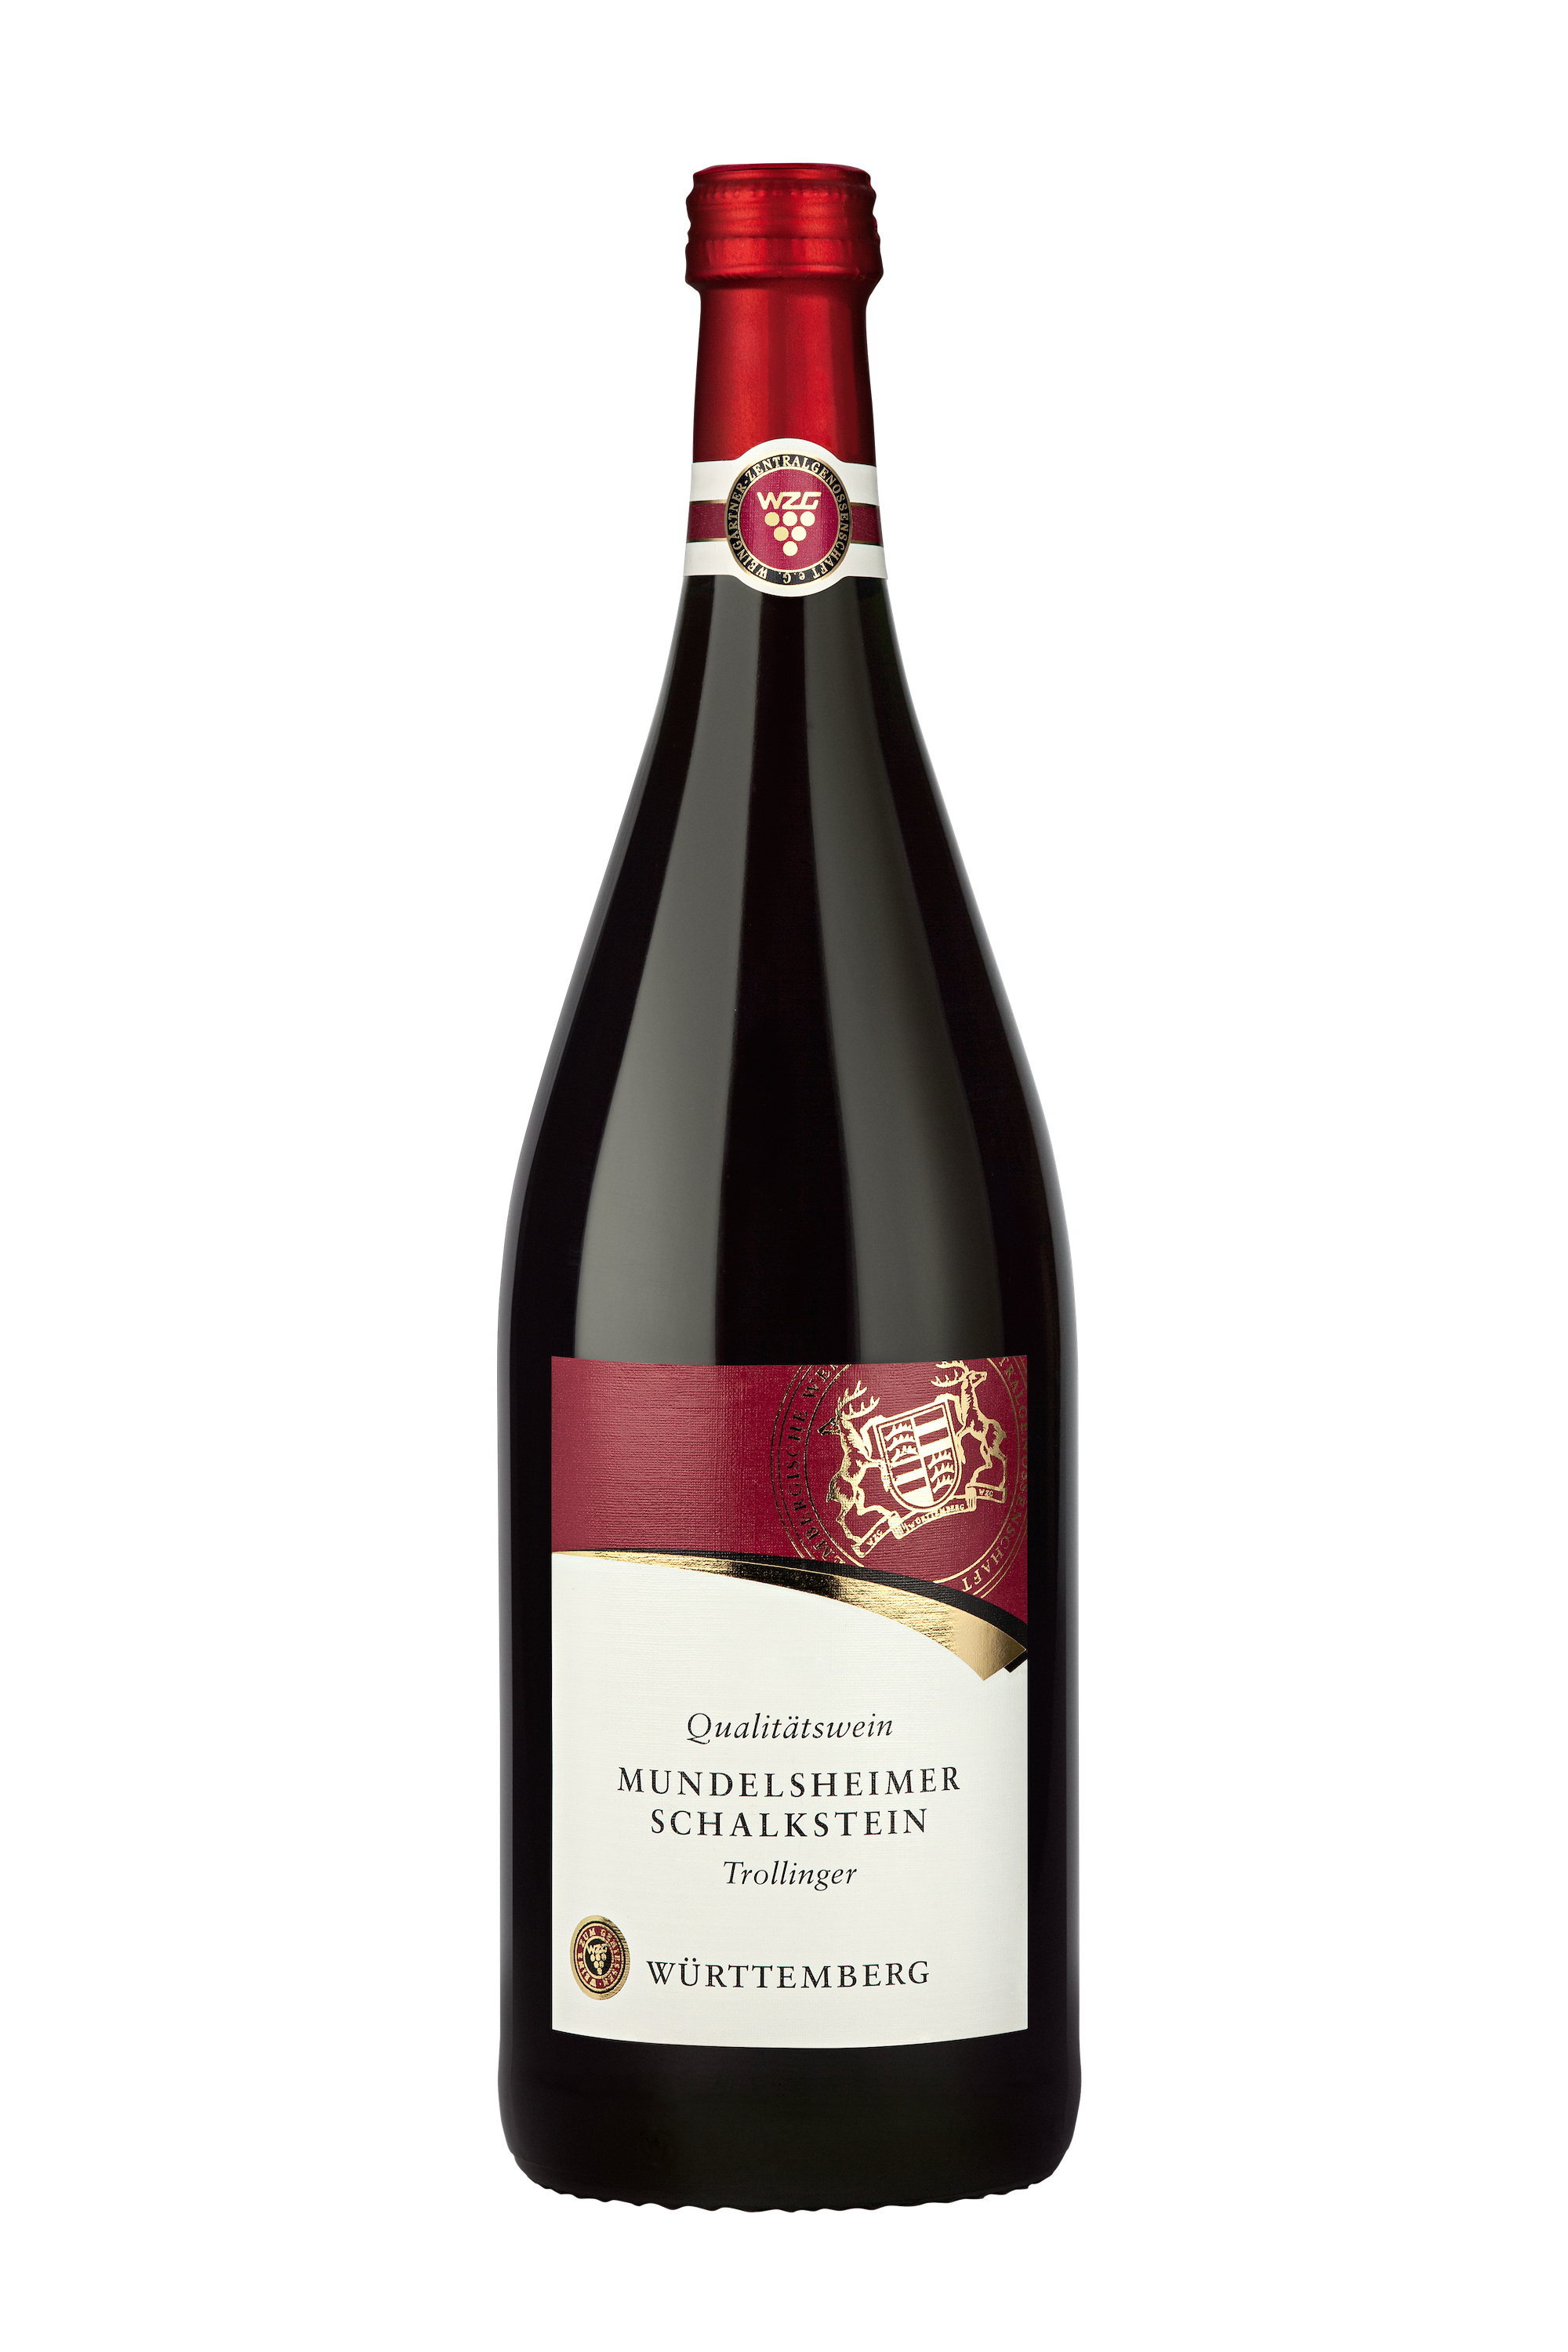 WZG Mundelsheimer Schalkstein Trollinger 1,0 L - Rotwein, halbtrocken, Qualitätswein, Württemberg, Literflasche, 1-Liter